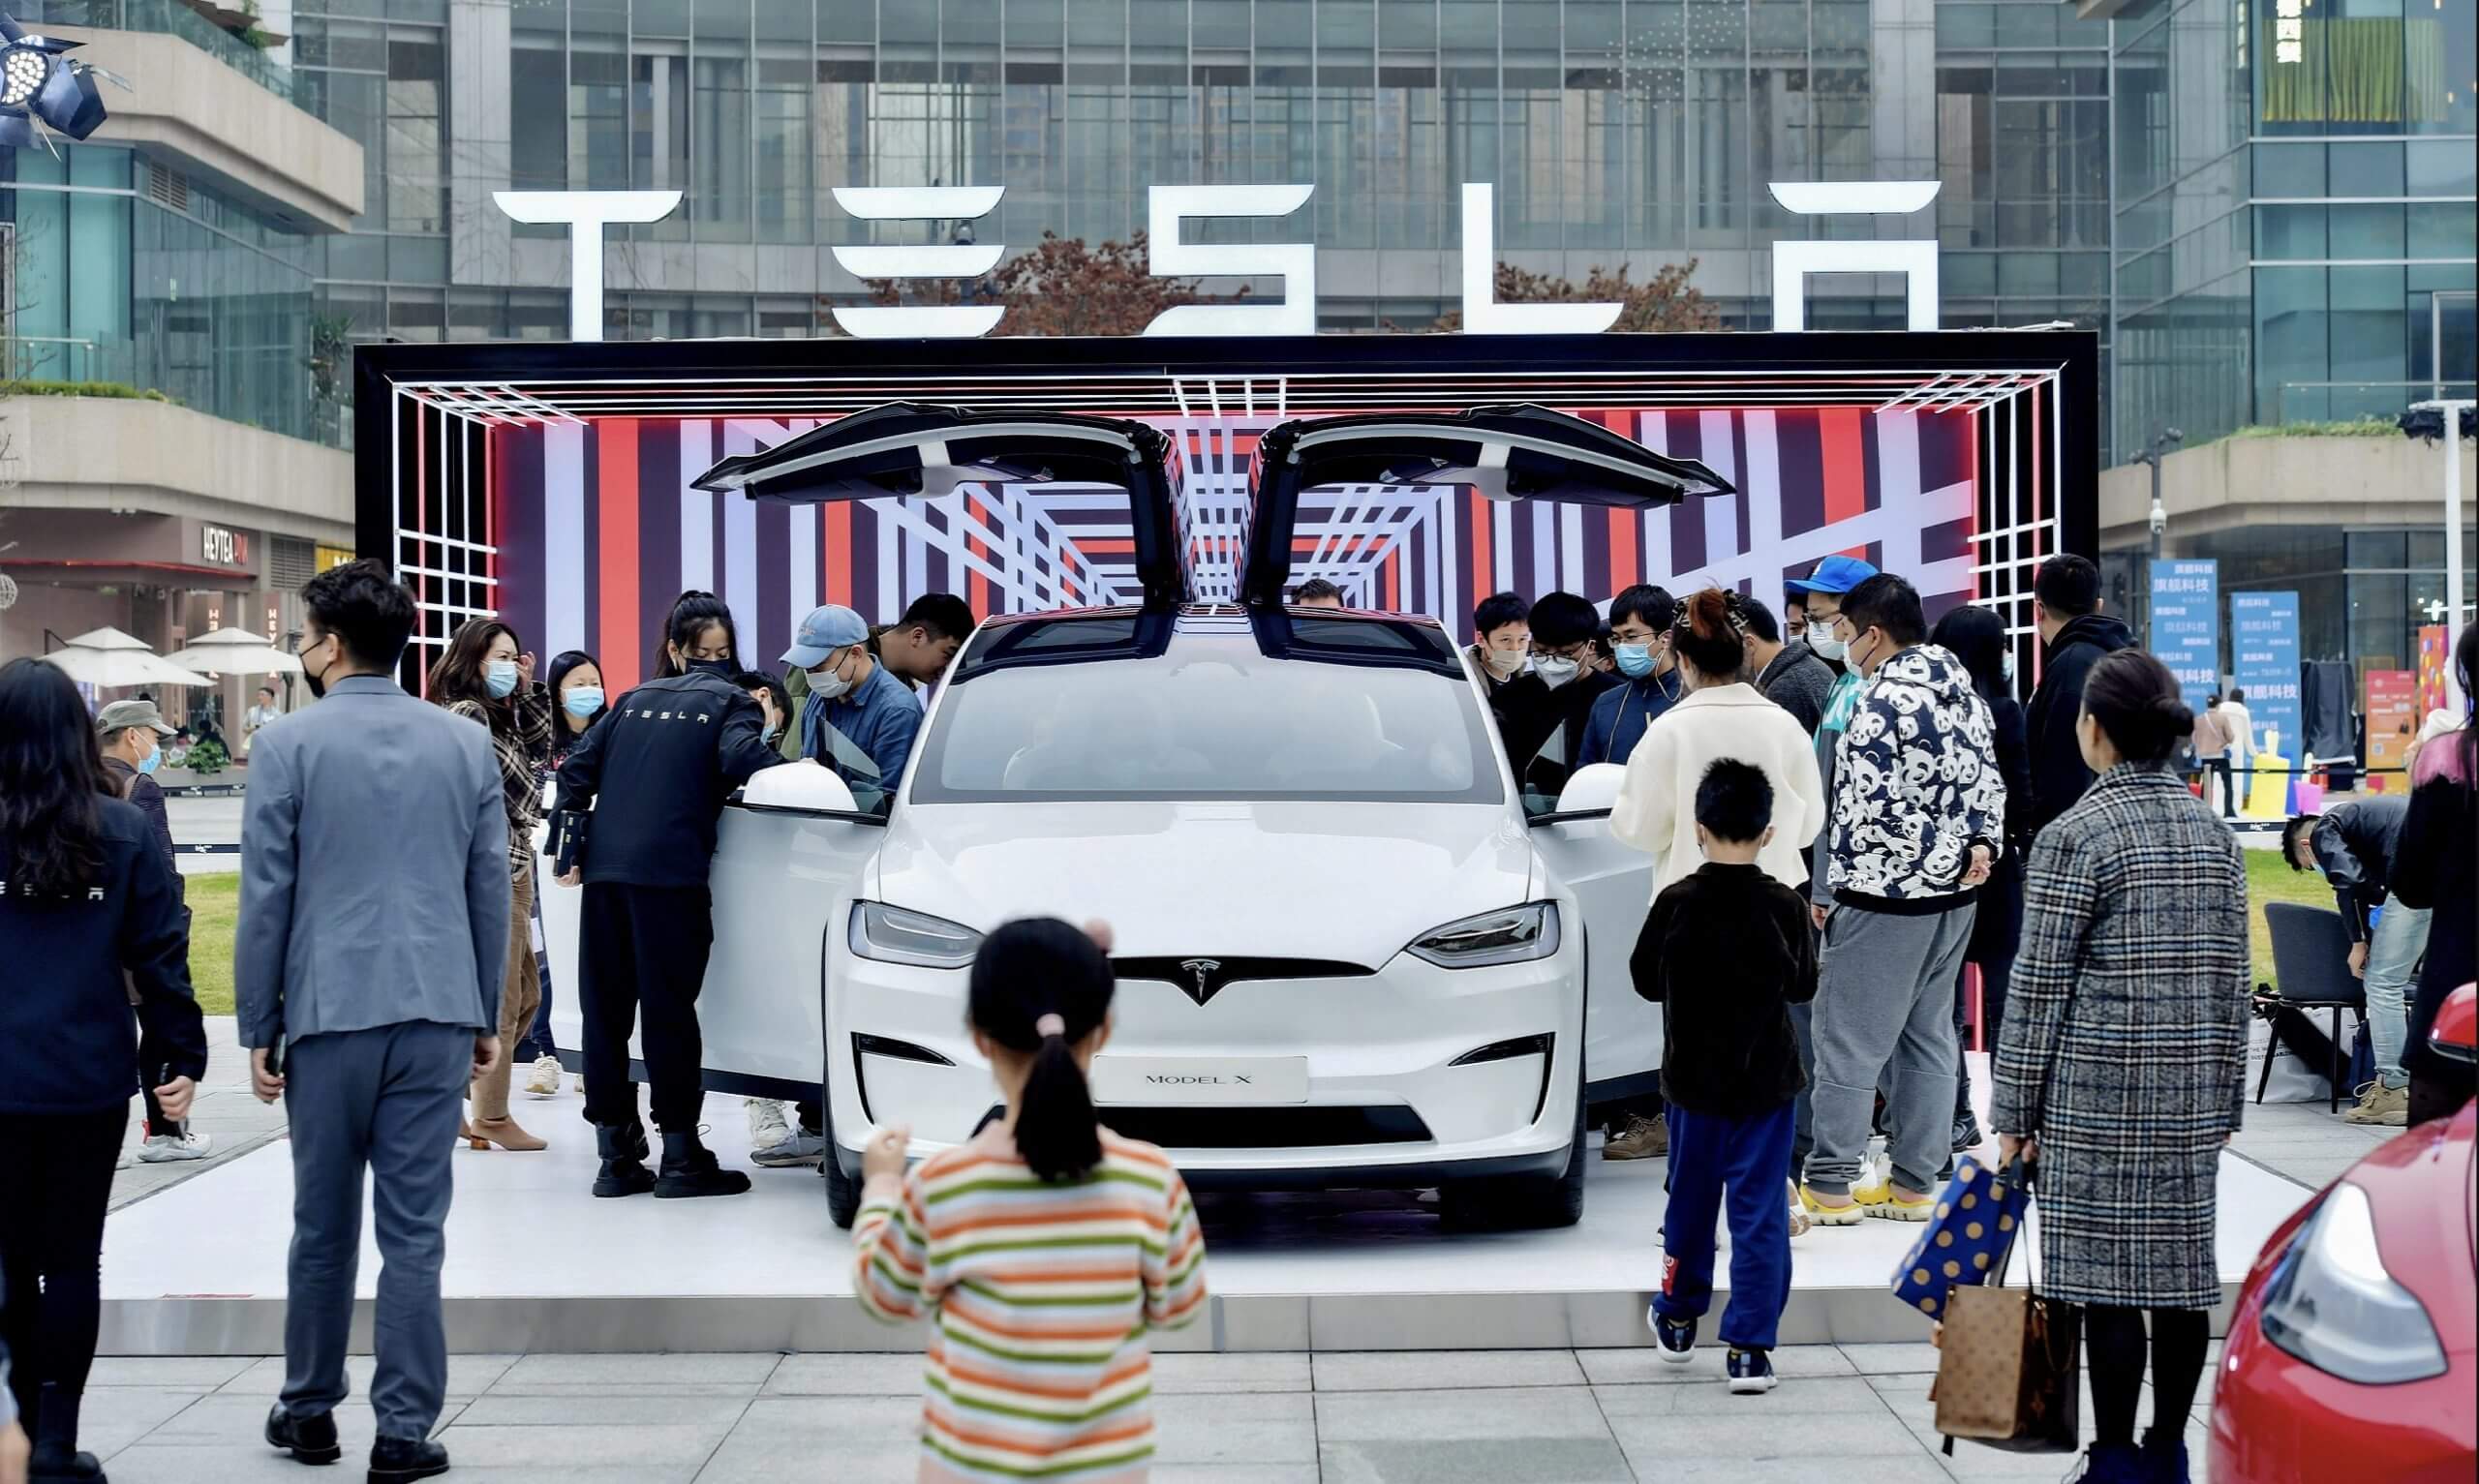 Tesla avrà bisogno di ulteriori riduzioni dei prezzi per innescare la domanda cinese: Morgan Stanley